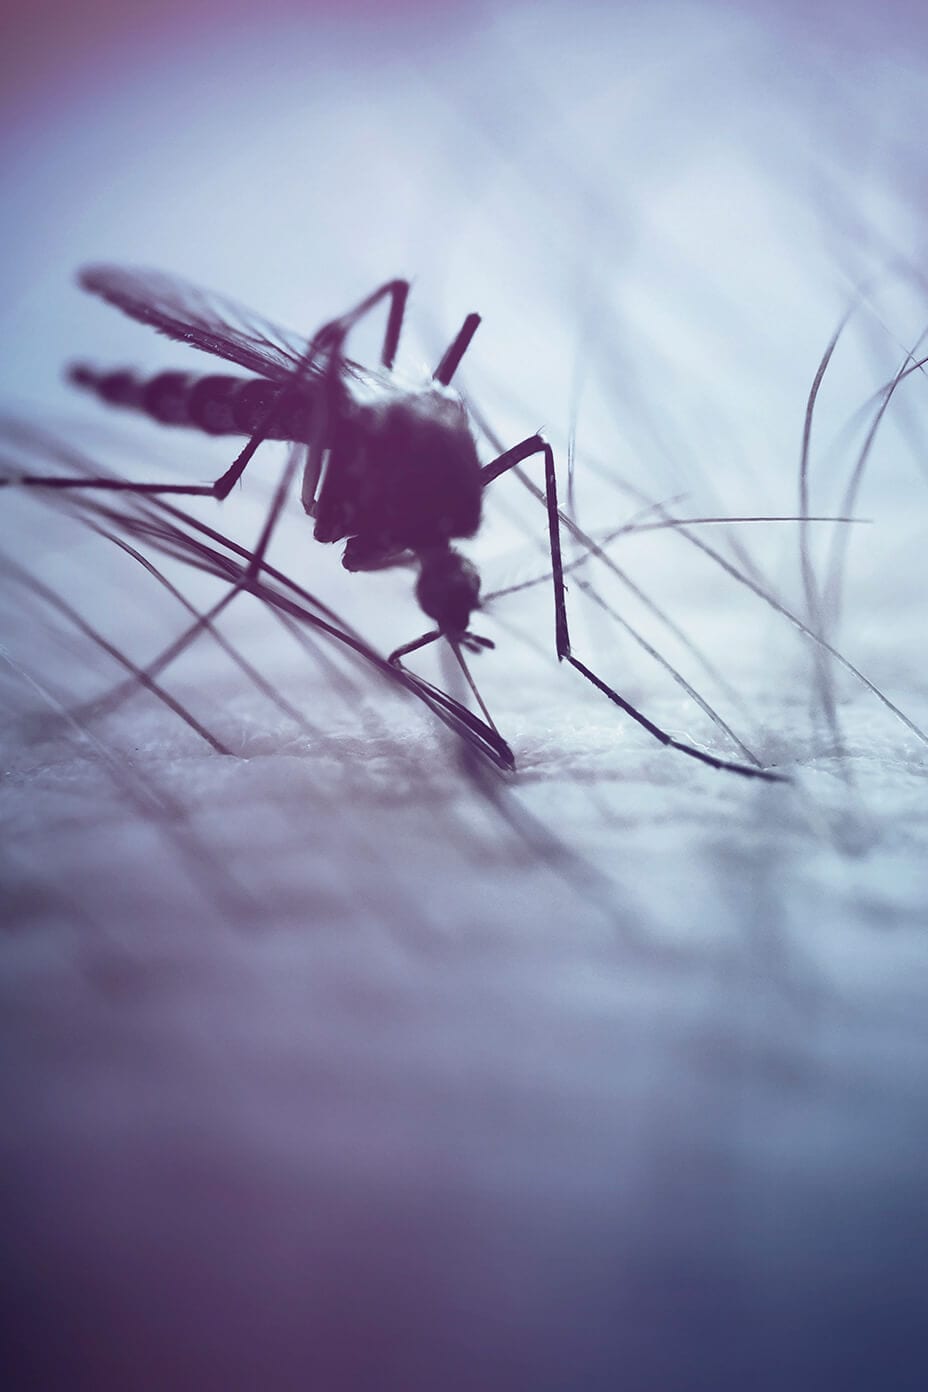 Un mosquito pica la piel de una persona